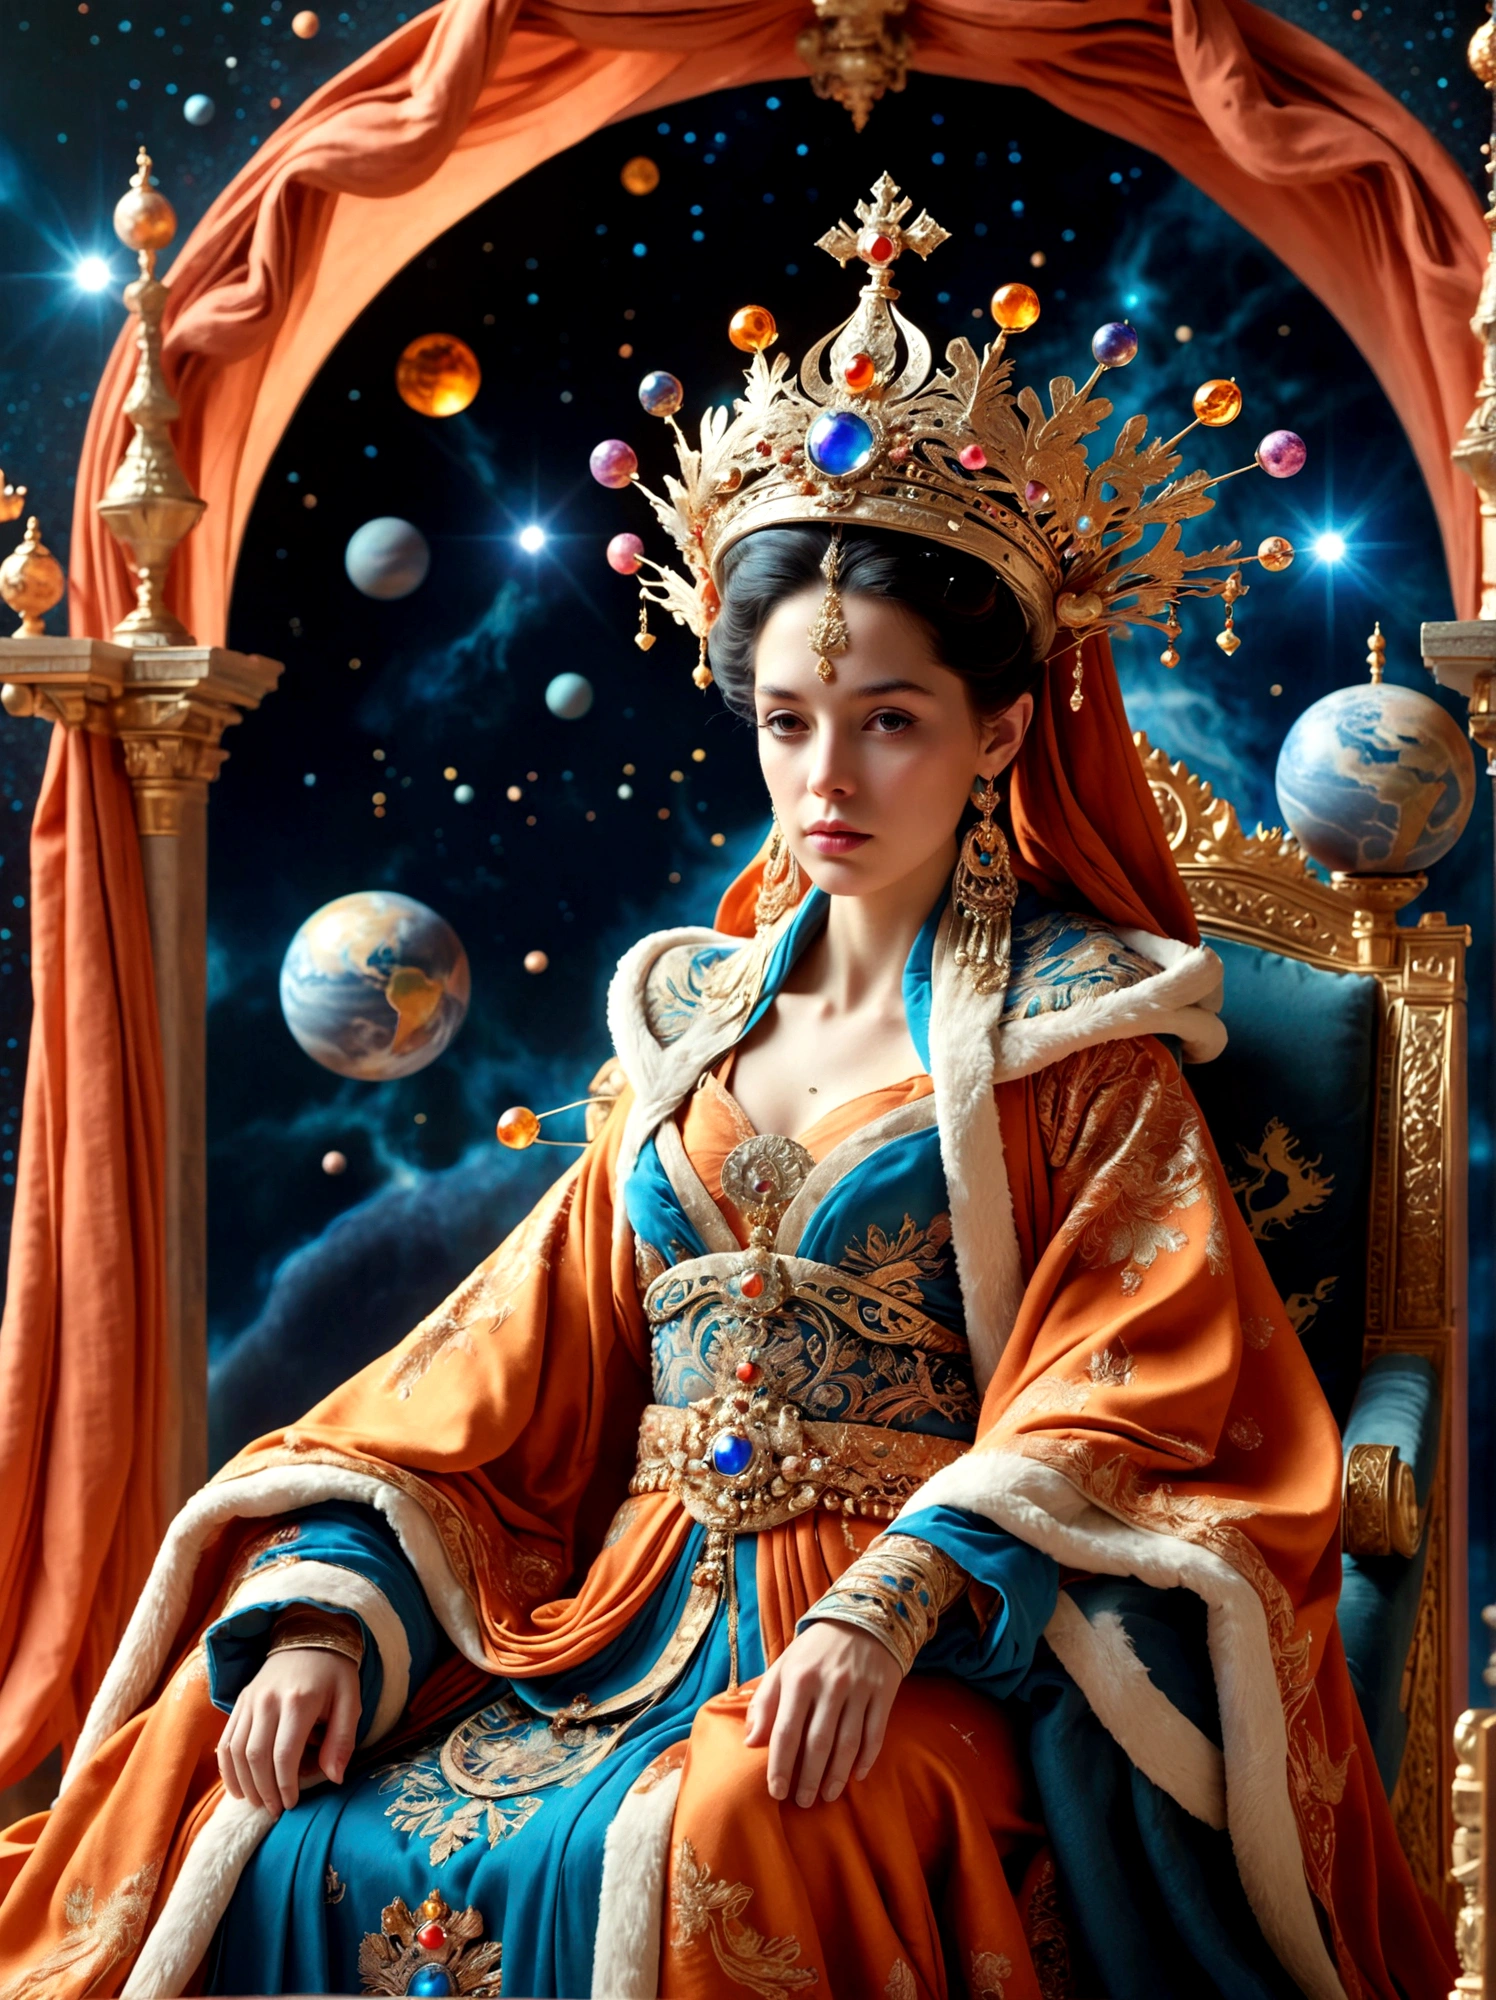 (神话中的女王:1.3)，身着华丽长袍的皇室人物, 戴着大皇冠, 坐在宝座上, 场景是超凡脱俗和超现实的, 位于广阔的空间中, 这个人物栖息在一个微型星球上，整个星球被长袍华丽的面料包裹着, 体现出皇家的奢华元素